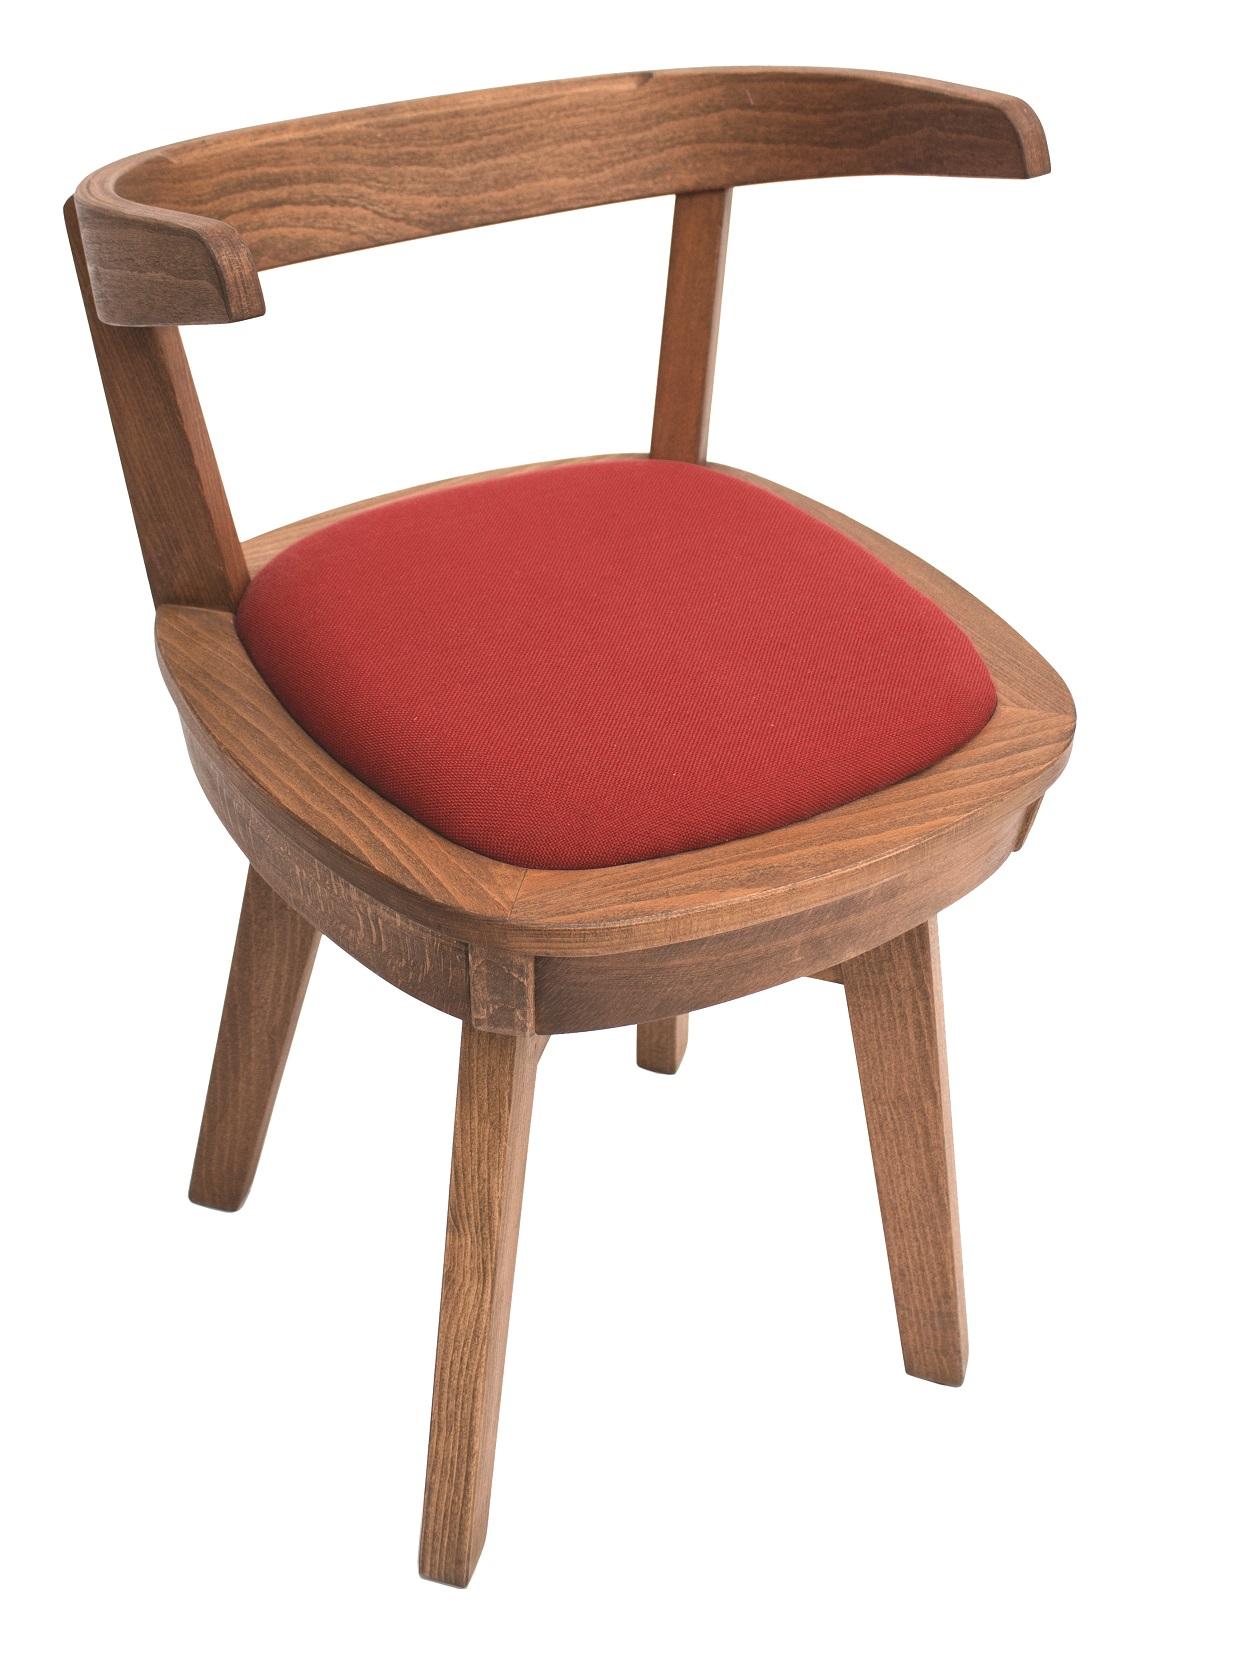 صندلی با نشیمن گردان چوبی